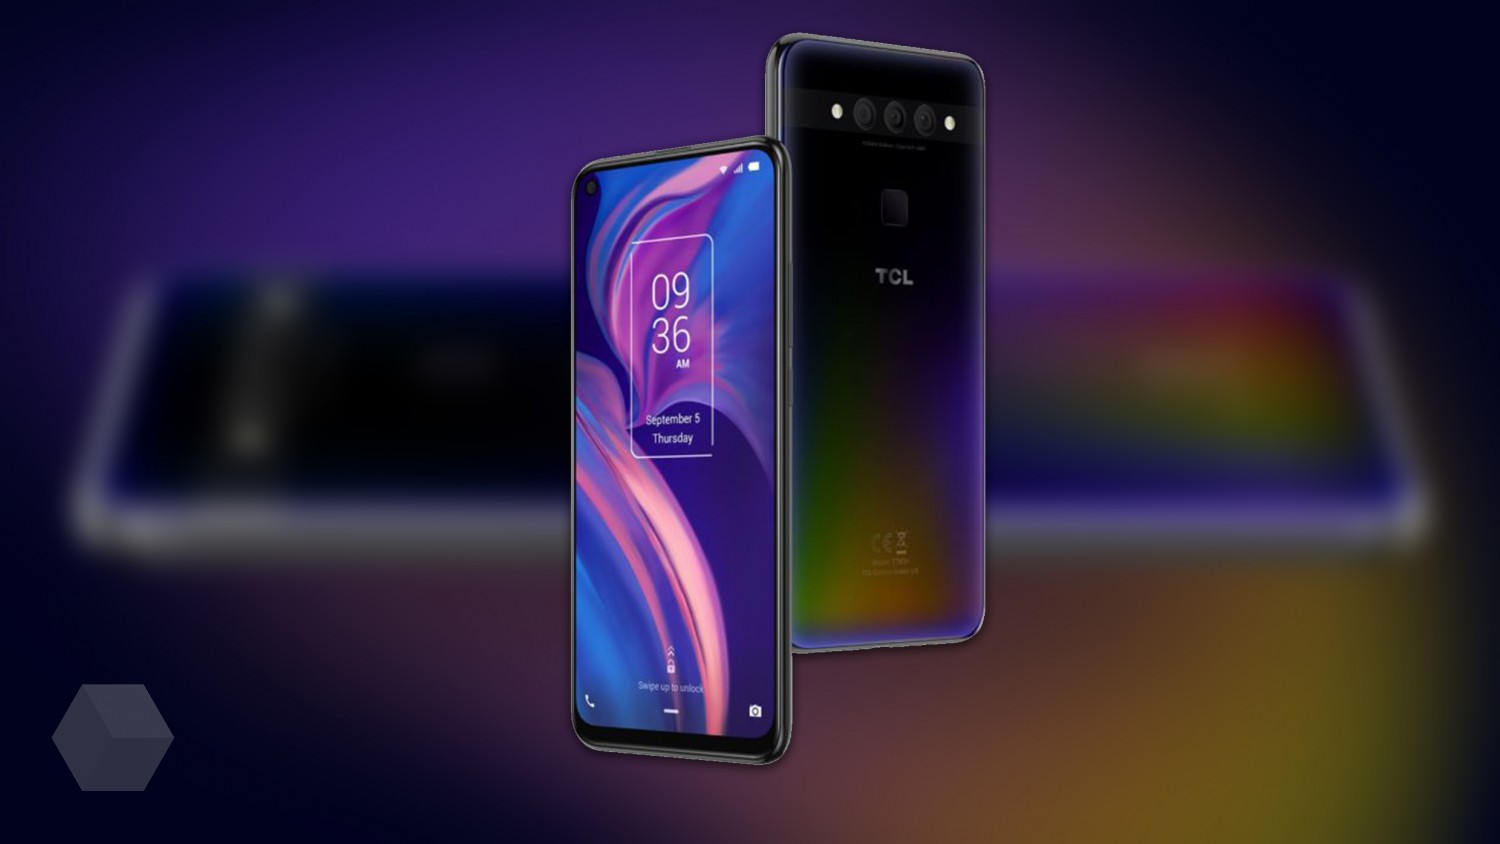 IFA 2019: компания TCL показала свой первый смартфон и новую графическую оболочку